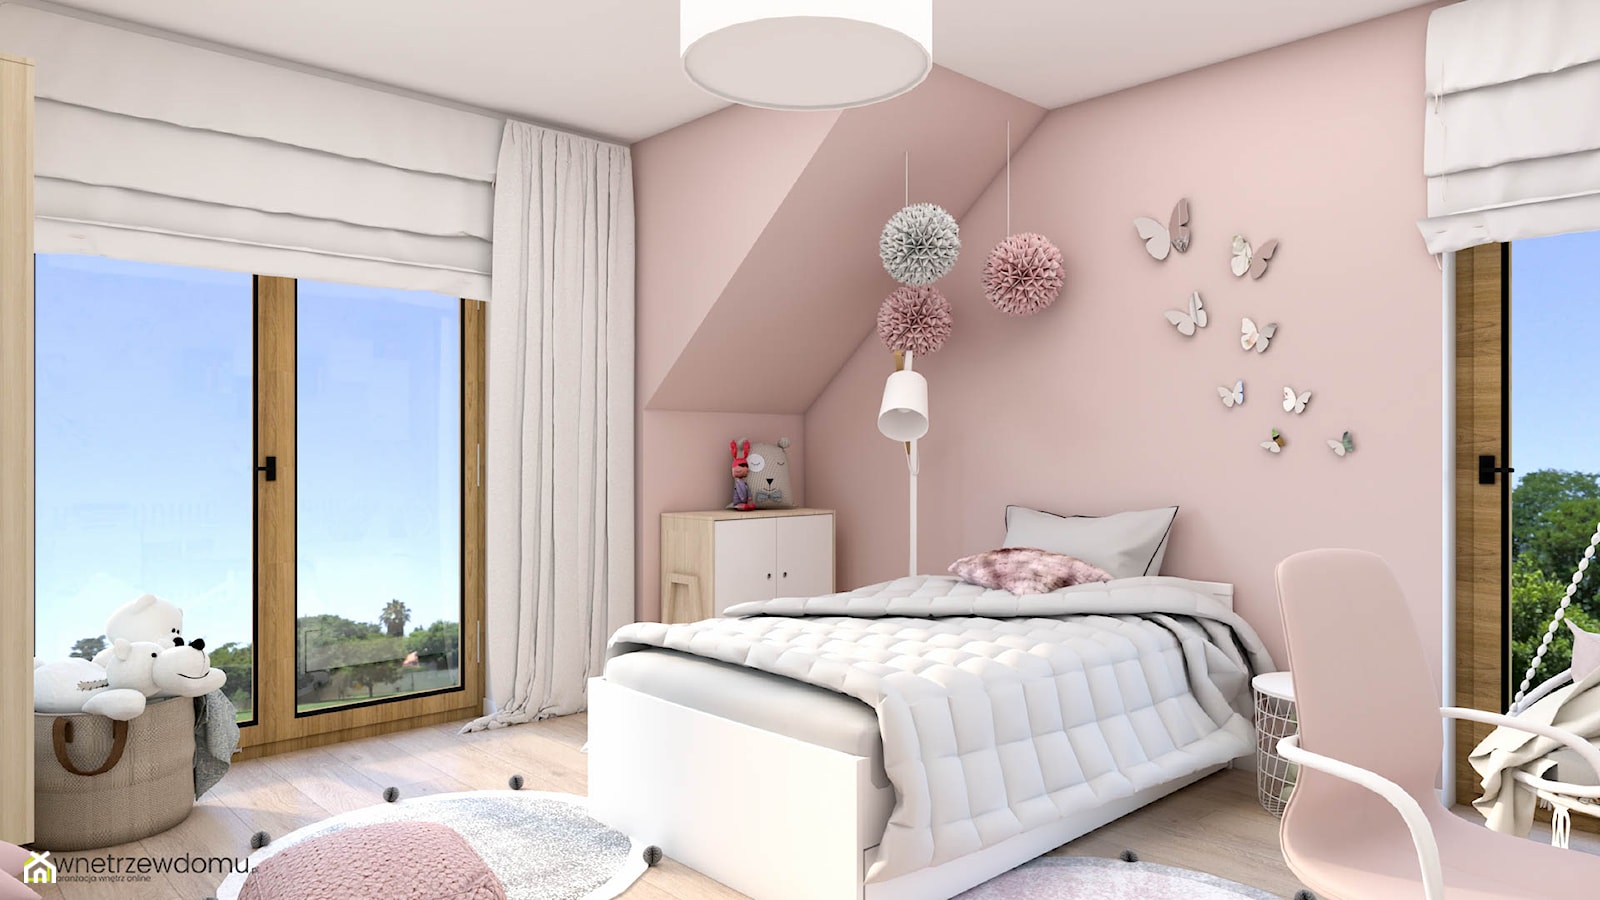 Delikatny pokój dla dziewczynki w odcieniach różu - zdjęcie od wnetrzewdomu - Homebook